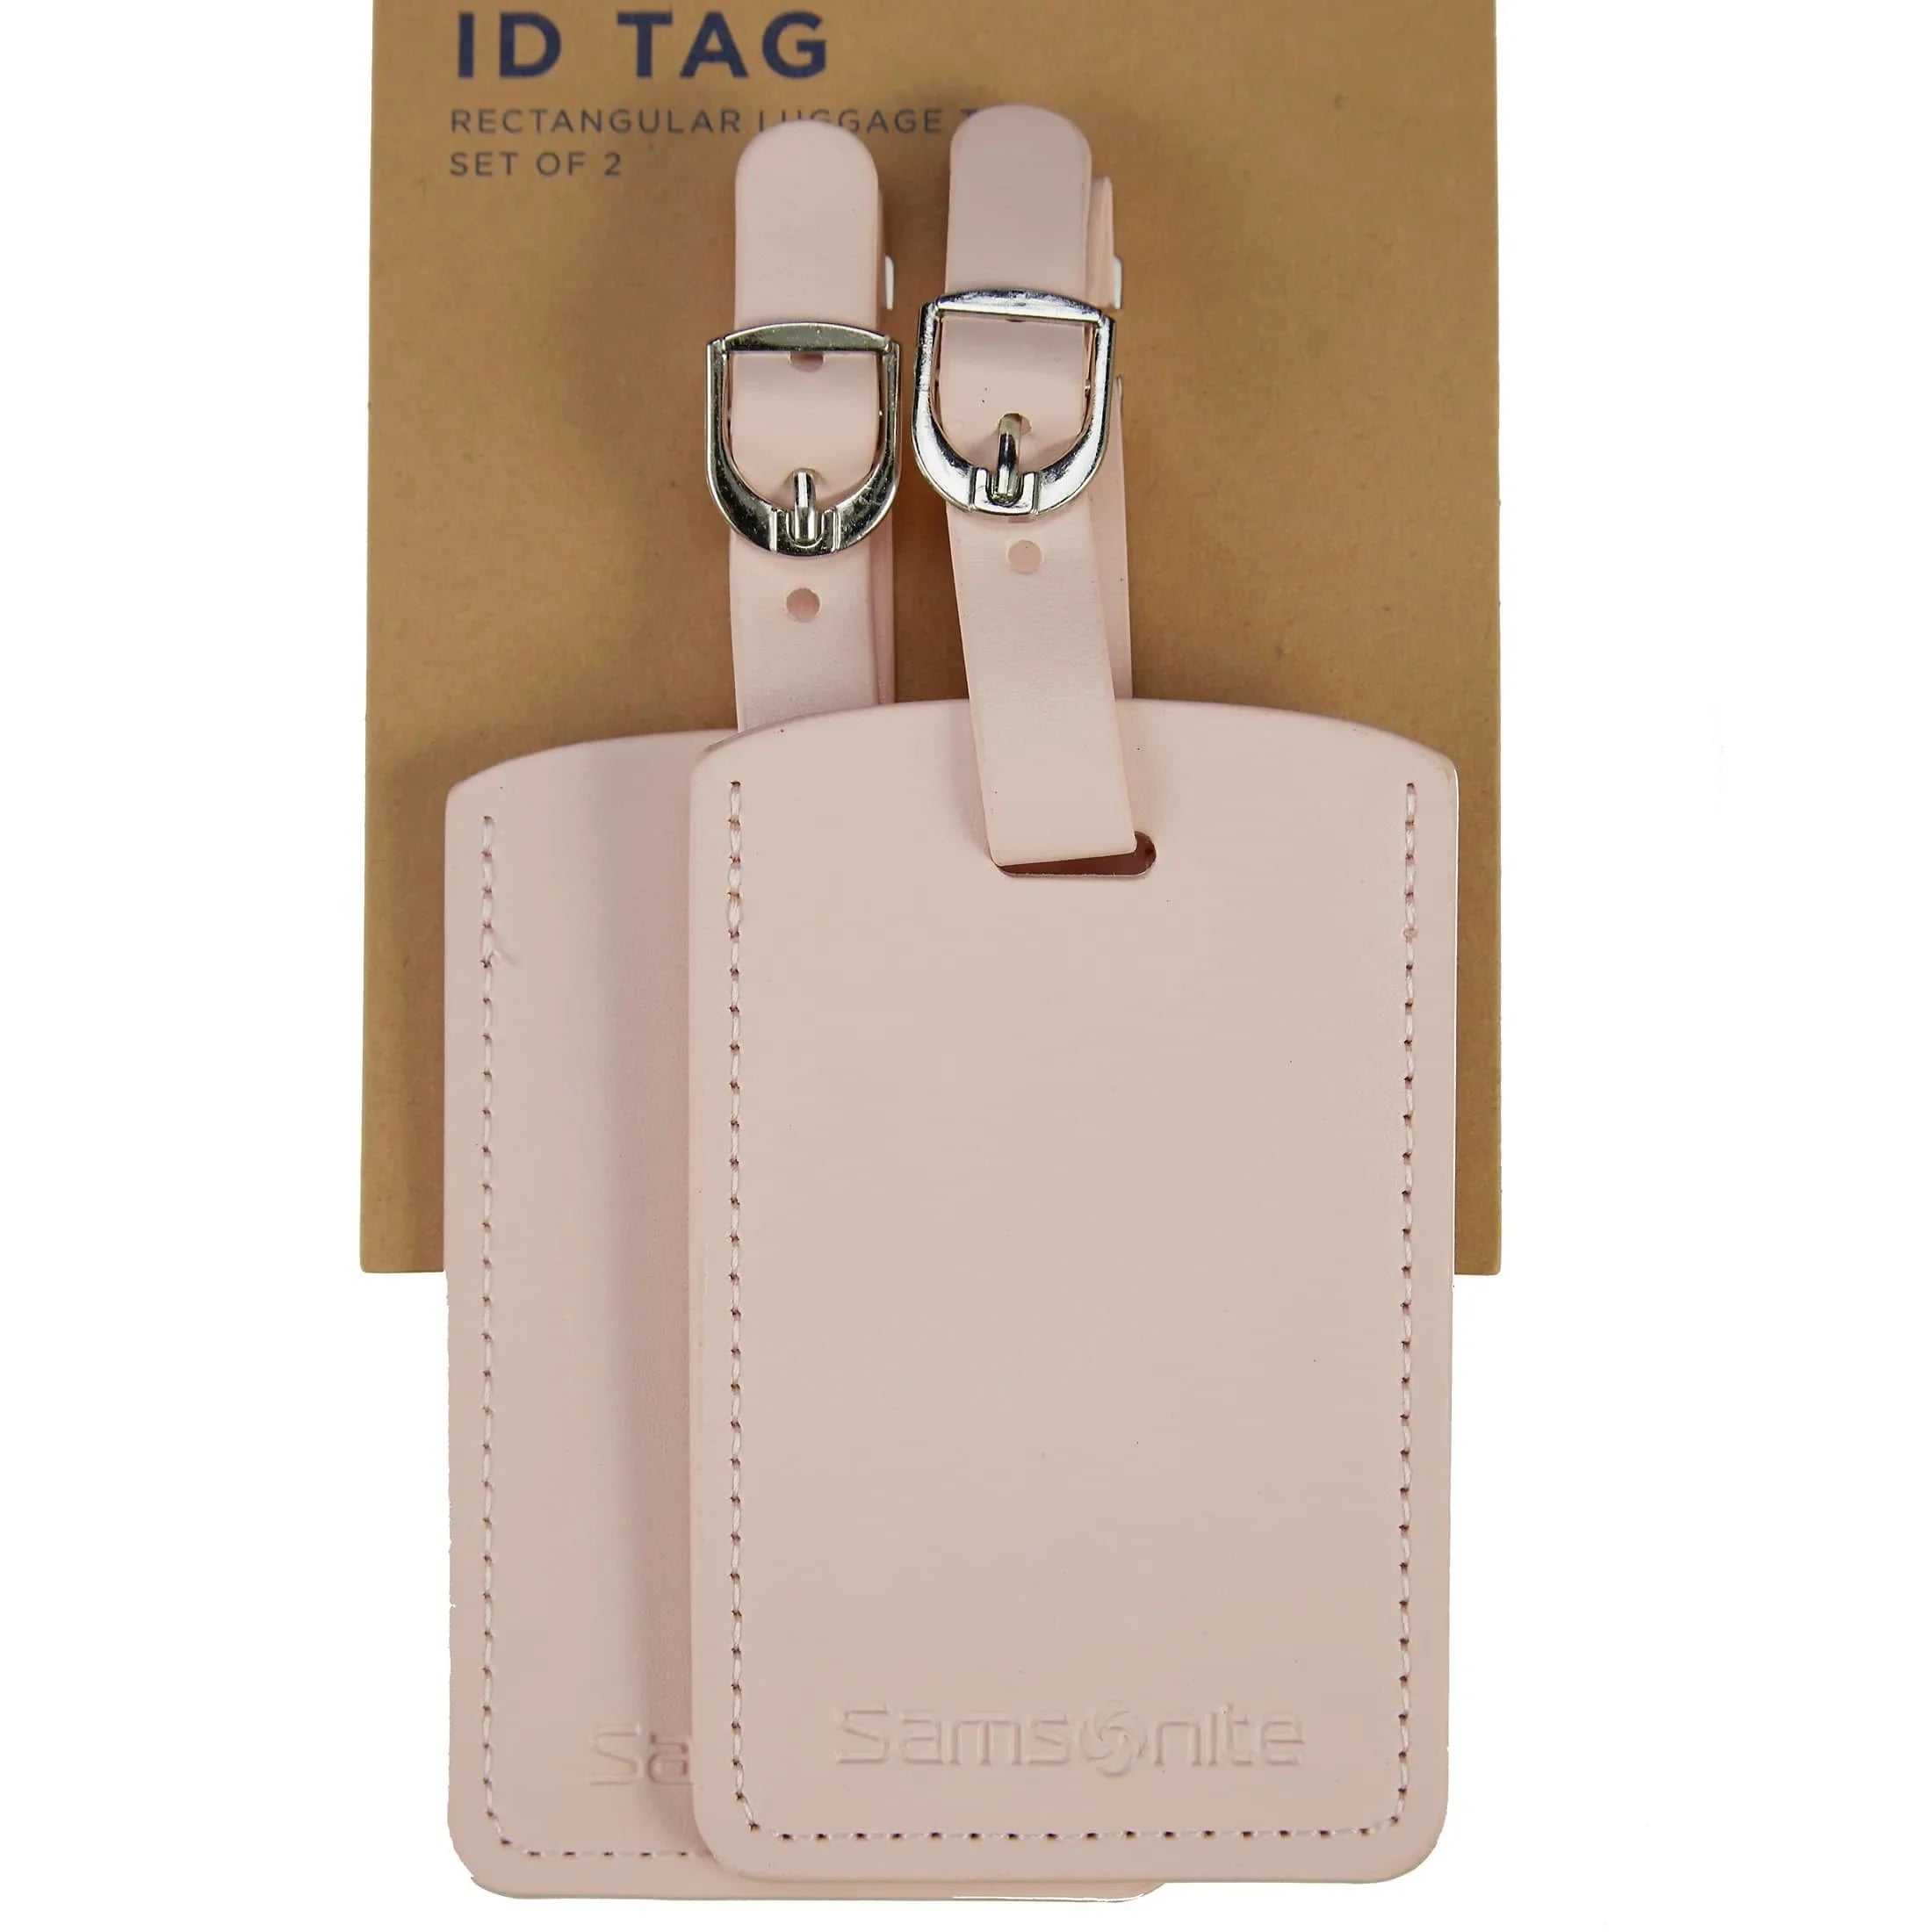 Samsonite Travel Accessories ensemble d'étiquettes à bagages - rose pâle